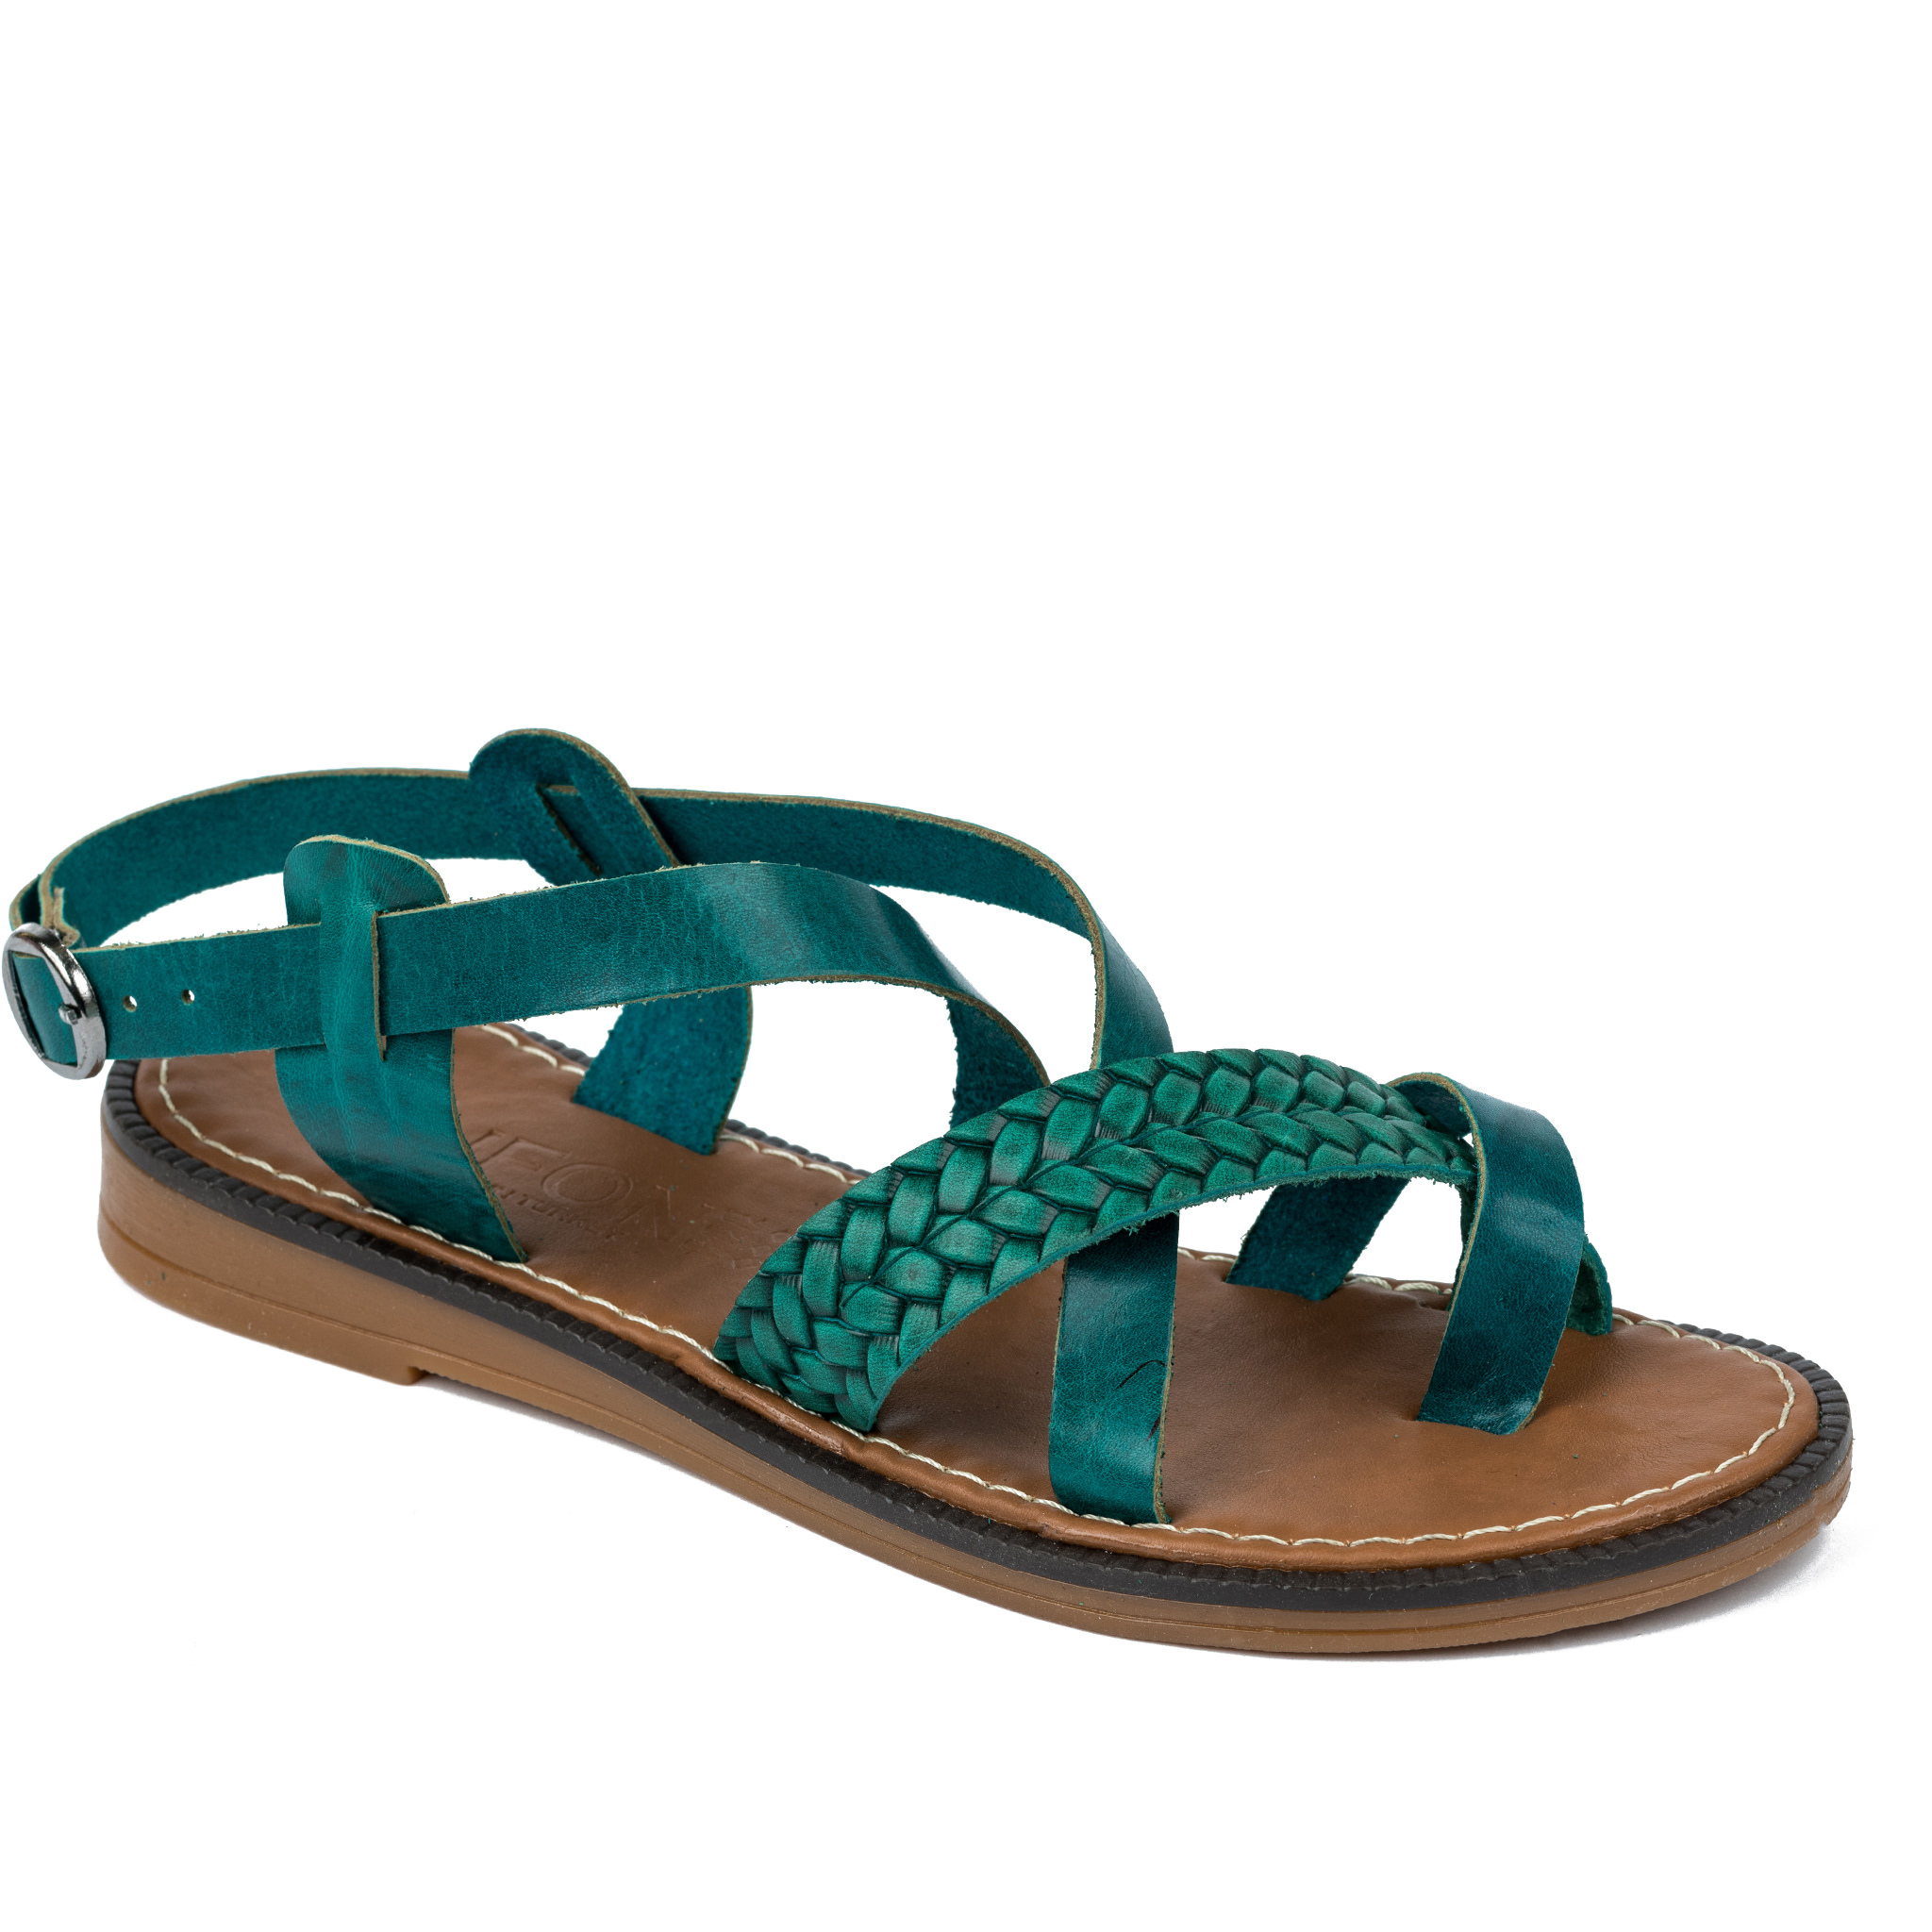 Women sandals A267 - GREEN